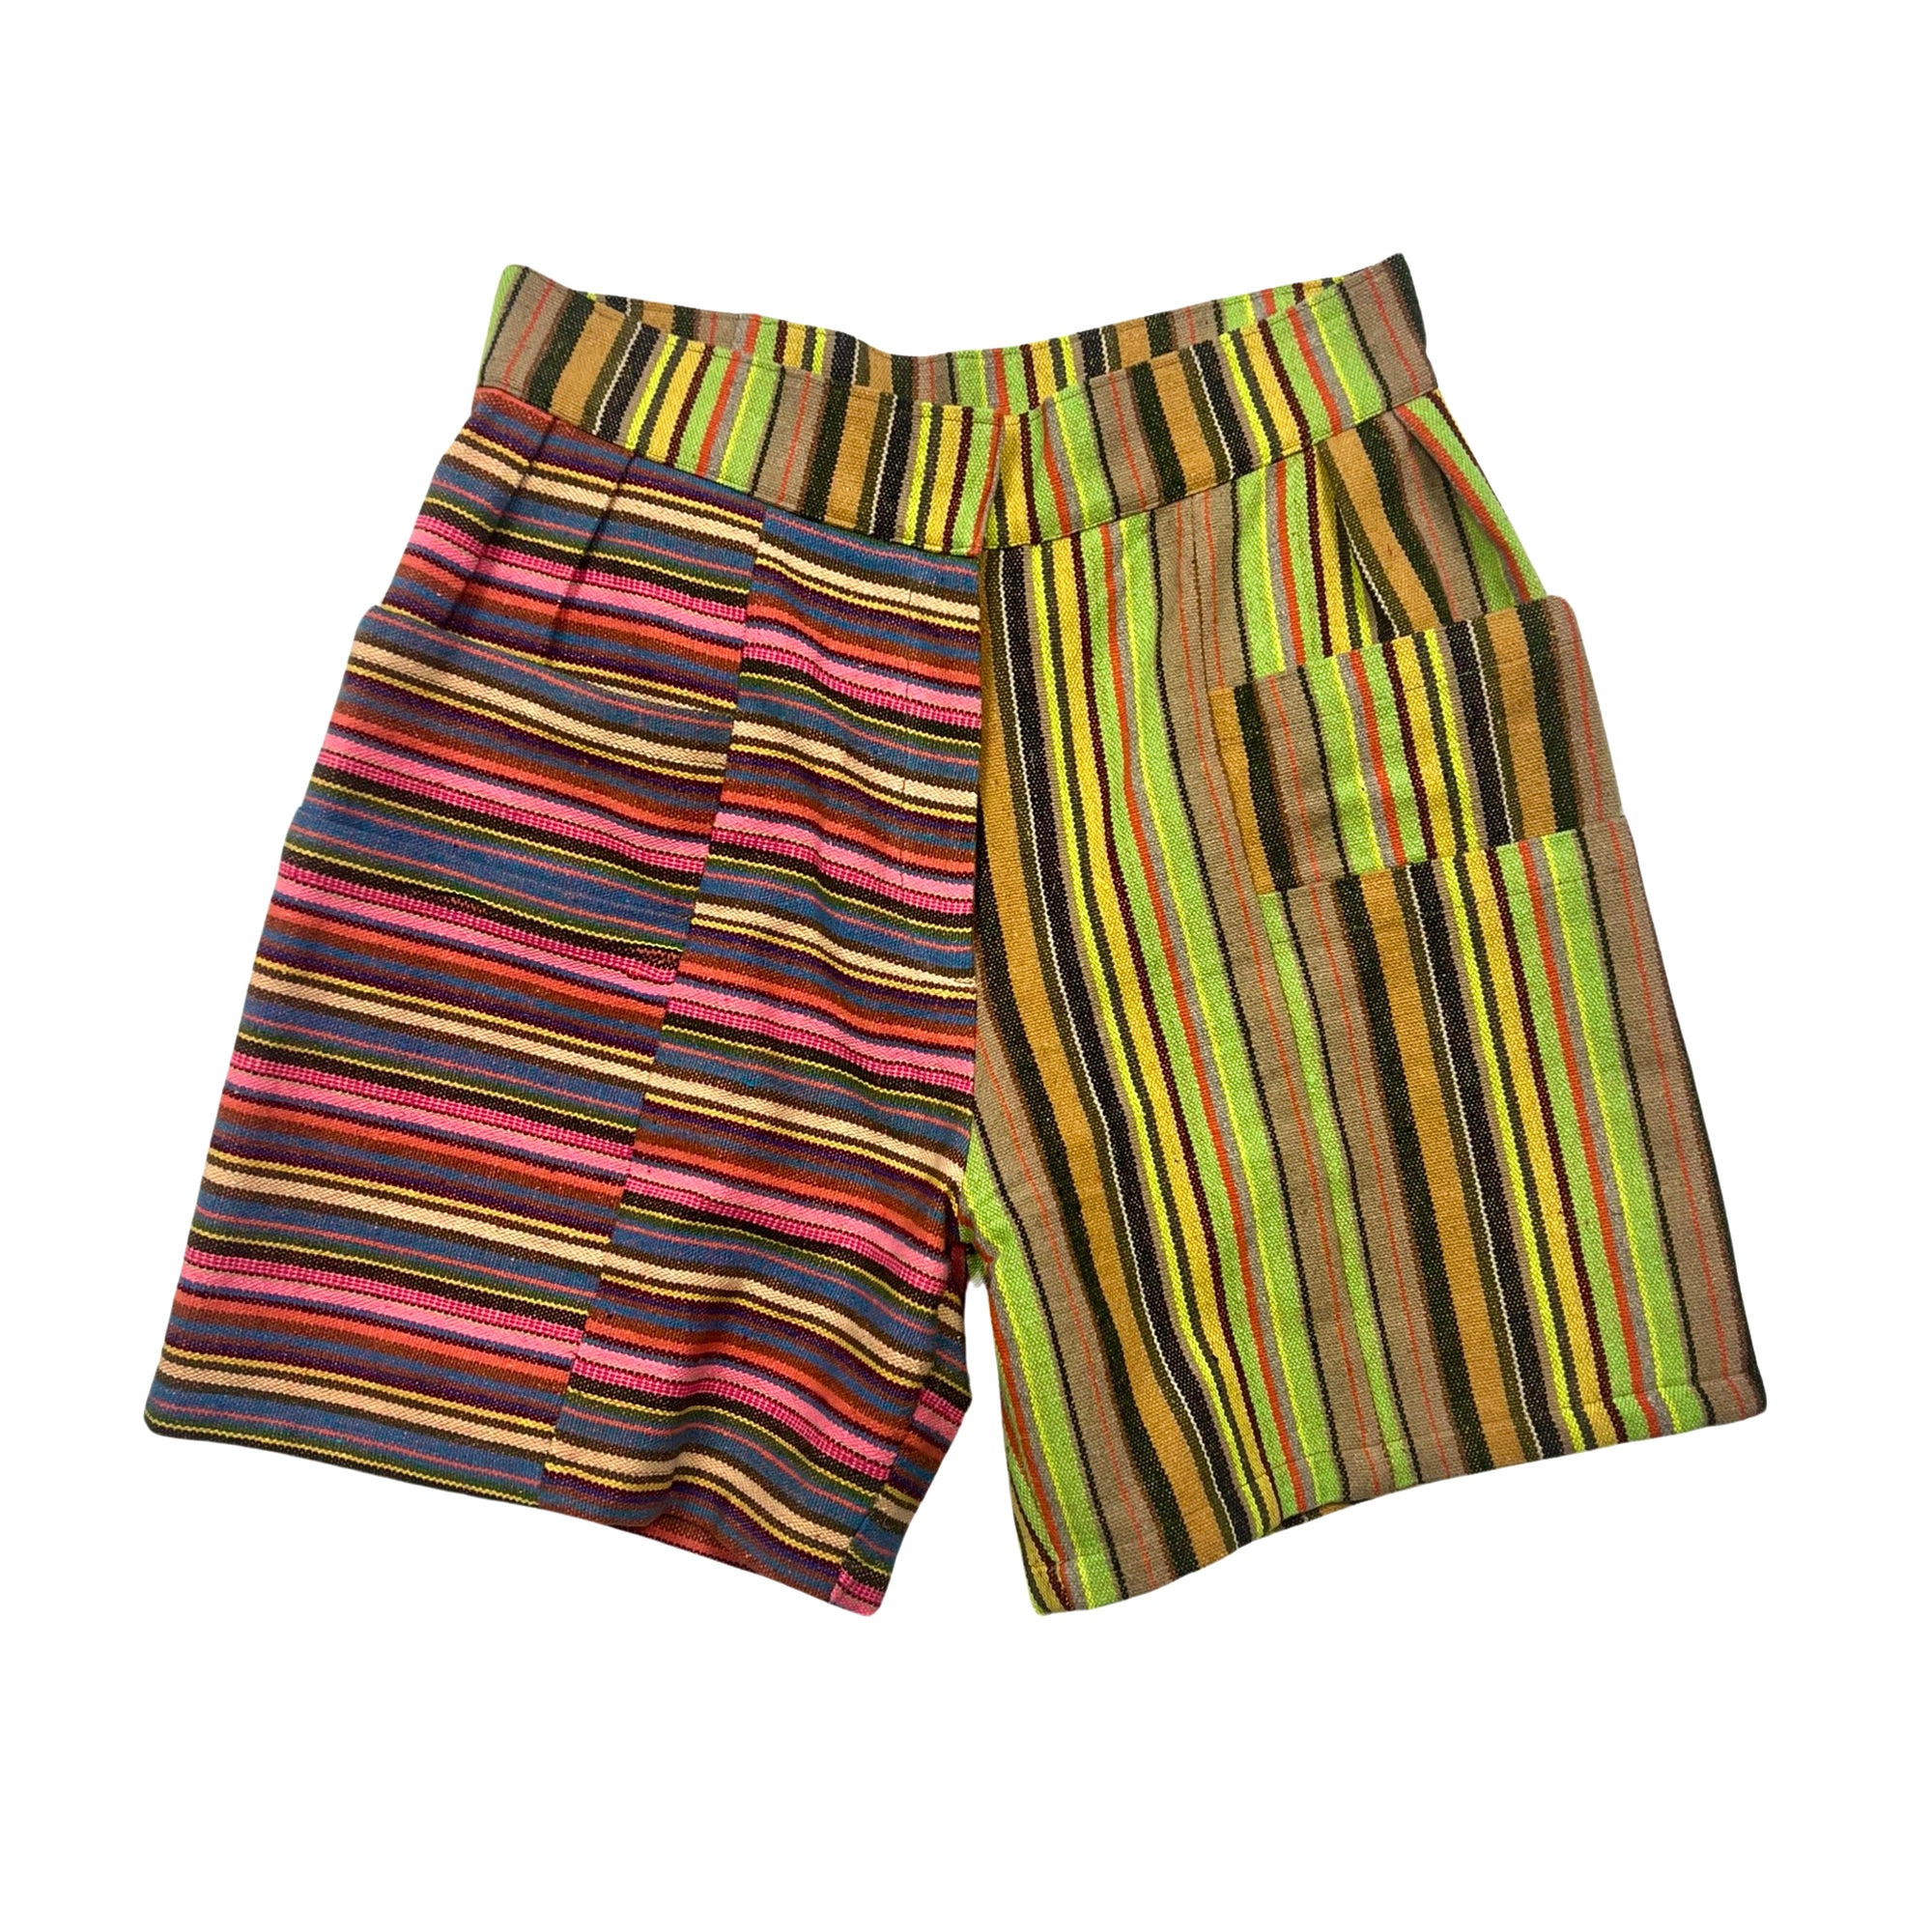 Men's Utility Shorts in Stripe